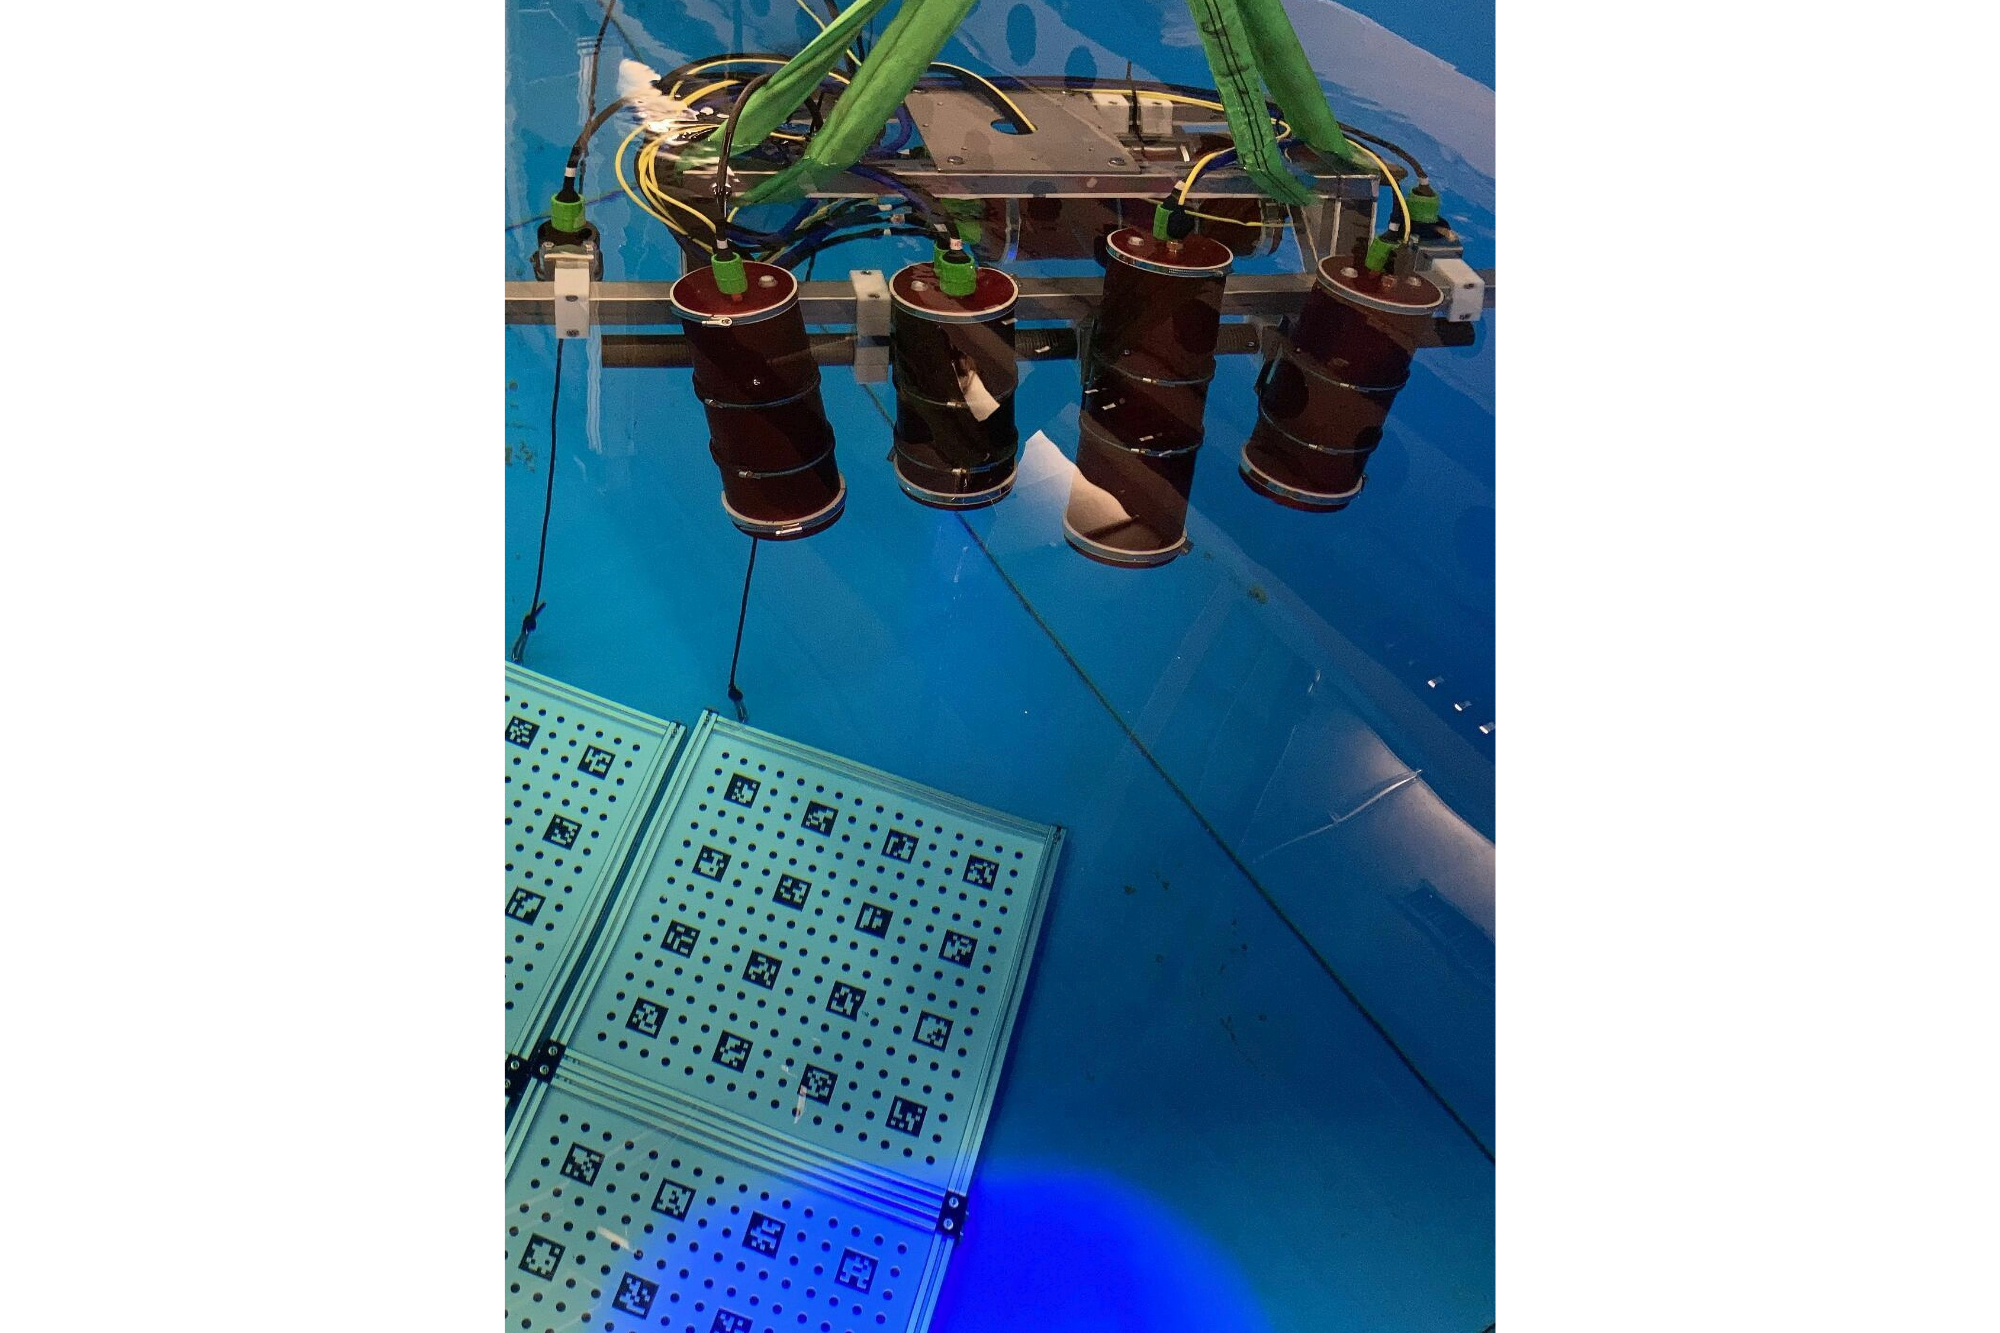 Das Sensorsystem goDEEP3D während der insitu-Kalibrierung mittels speziell entwickelter Unter-Wasser Kalibrierobjekte im Klarwasserbecken.